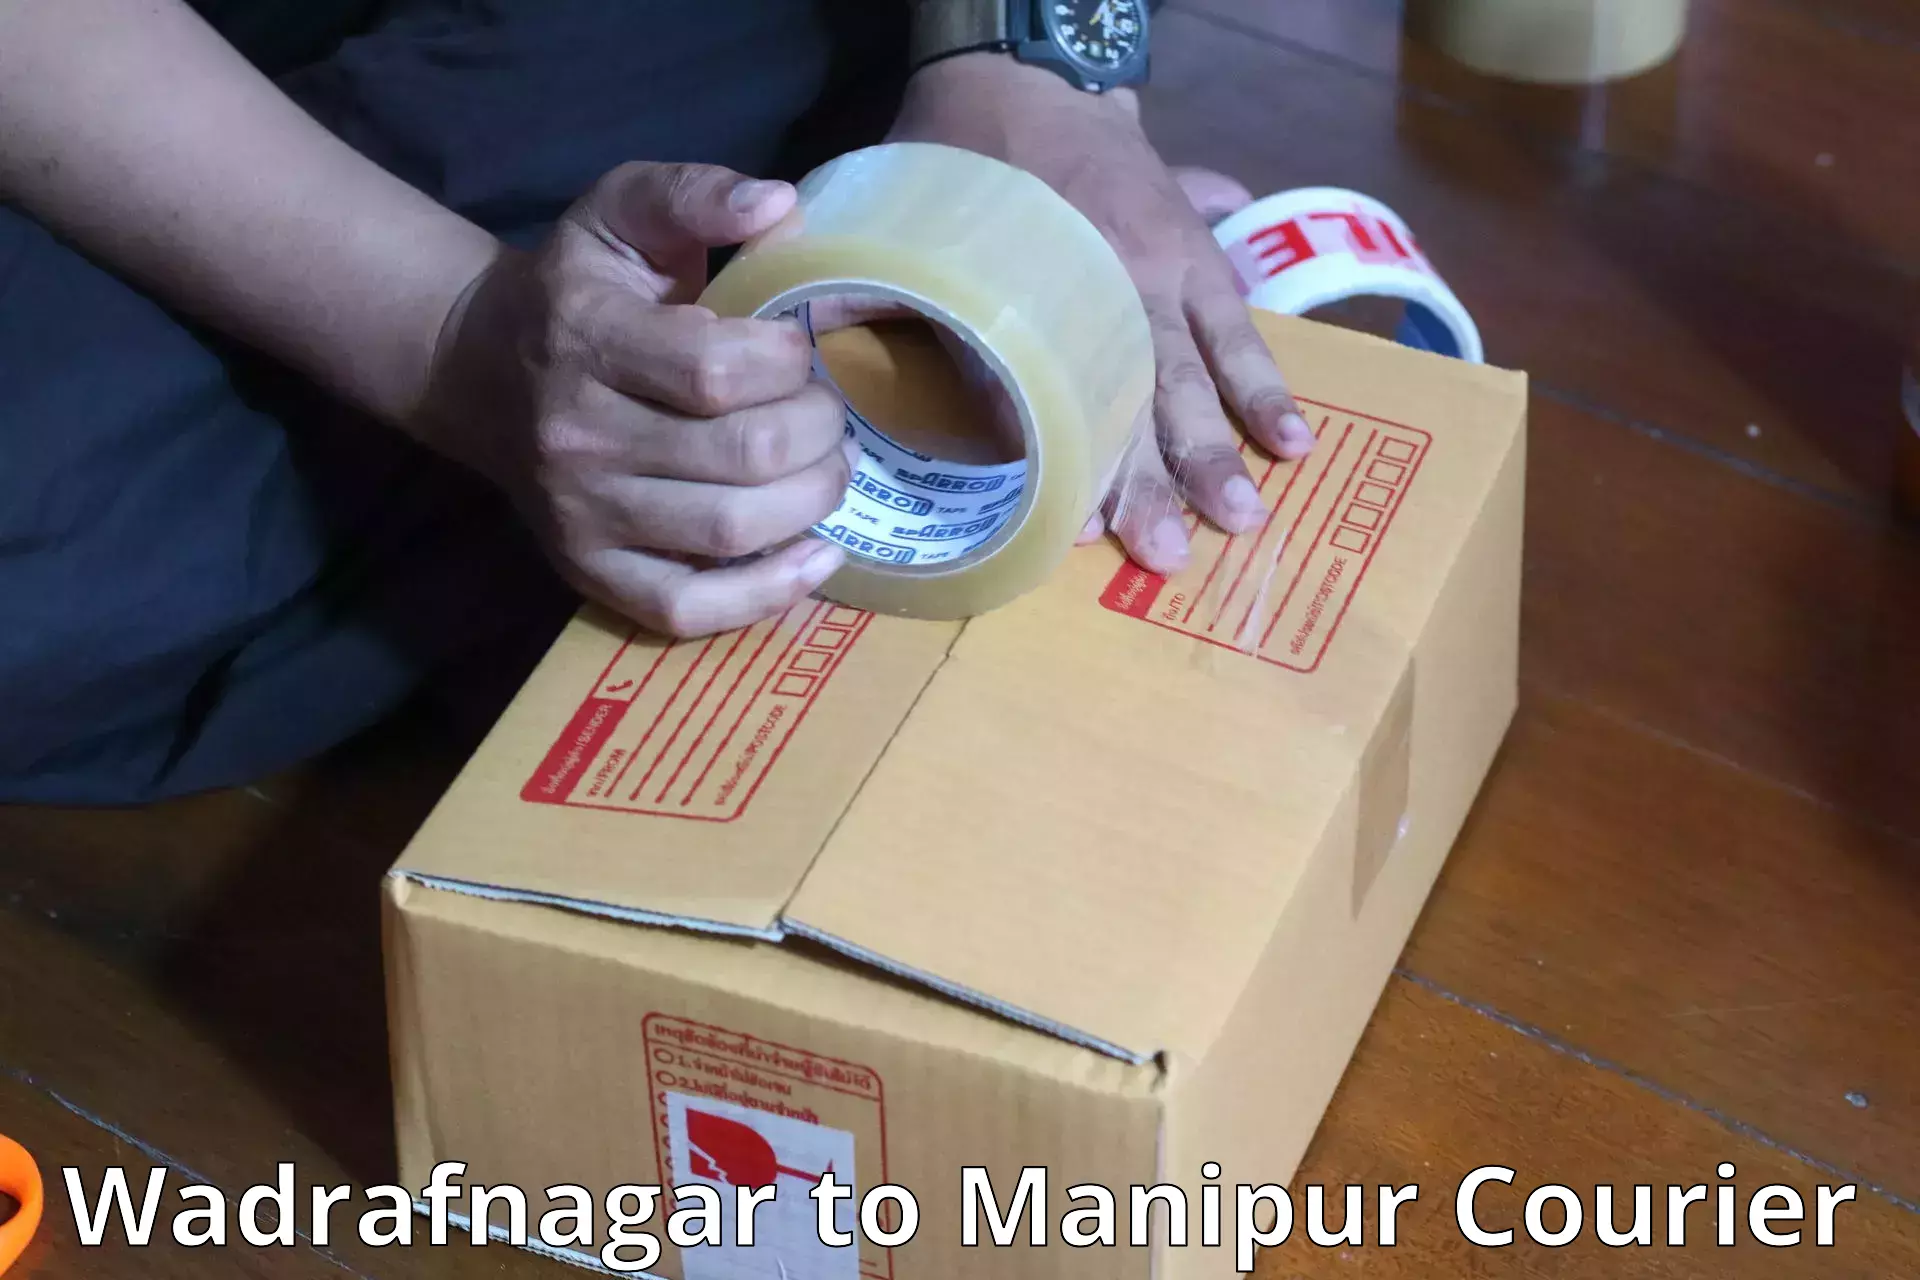 Digital baggage courier Wadrafnagar to Senapati